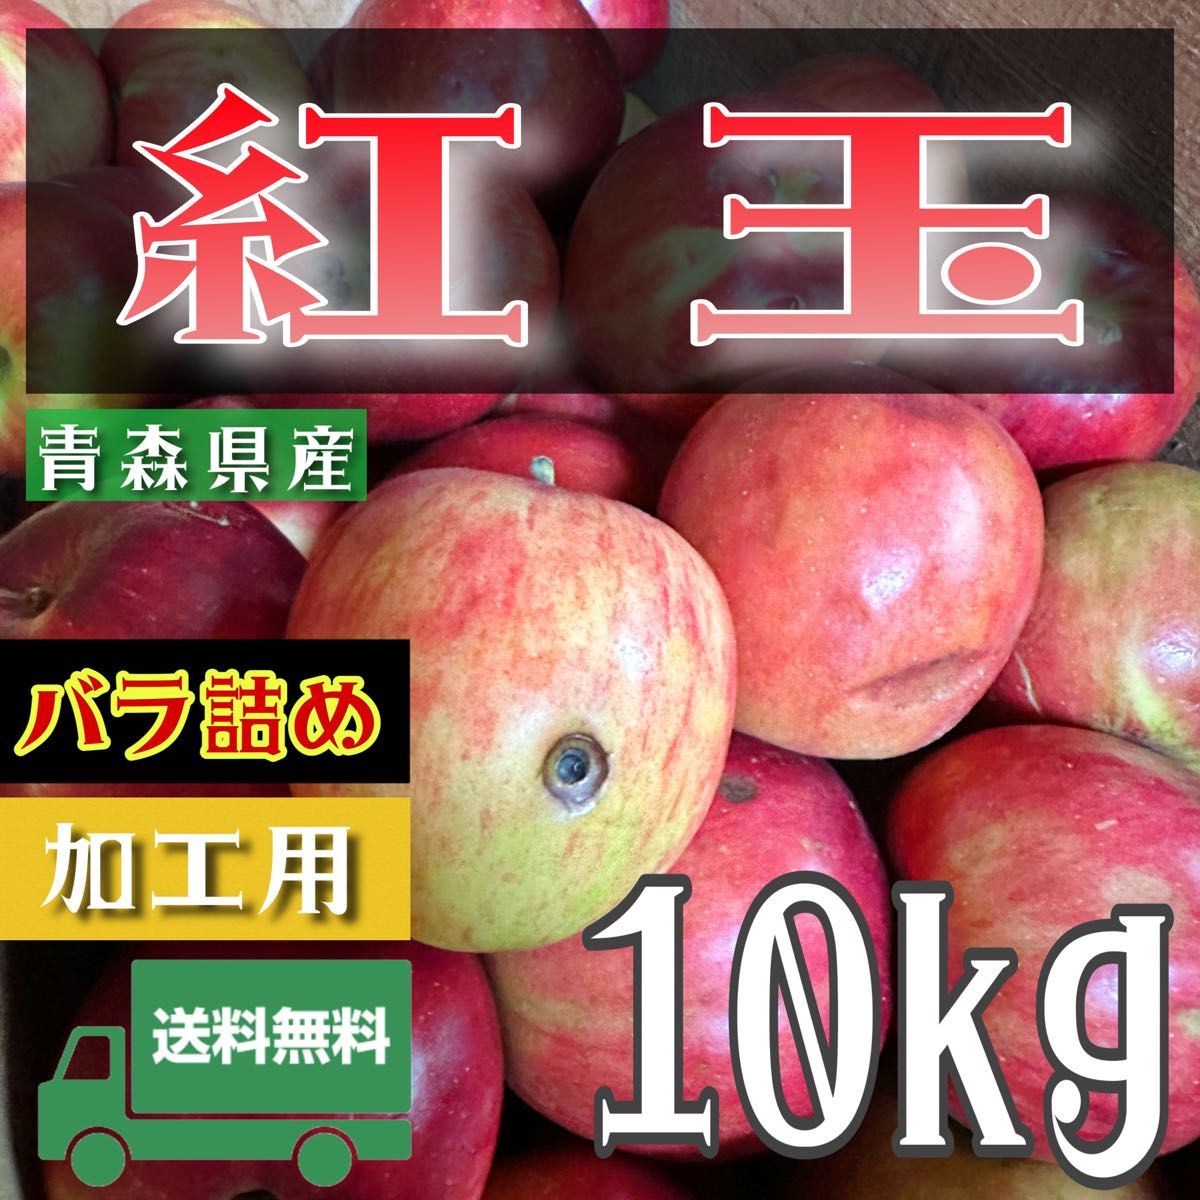 ＂ 紅玉 ＂【青森県産りんご10kg】【産地直送】【即購入OK】【送料無料】加工用 りんご リンゴ  林檎